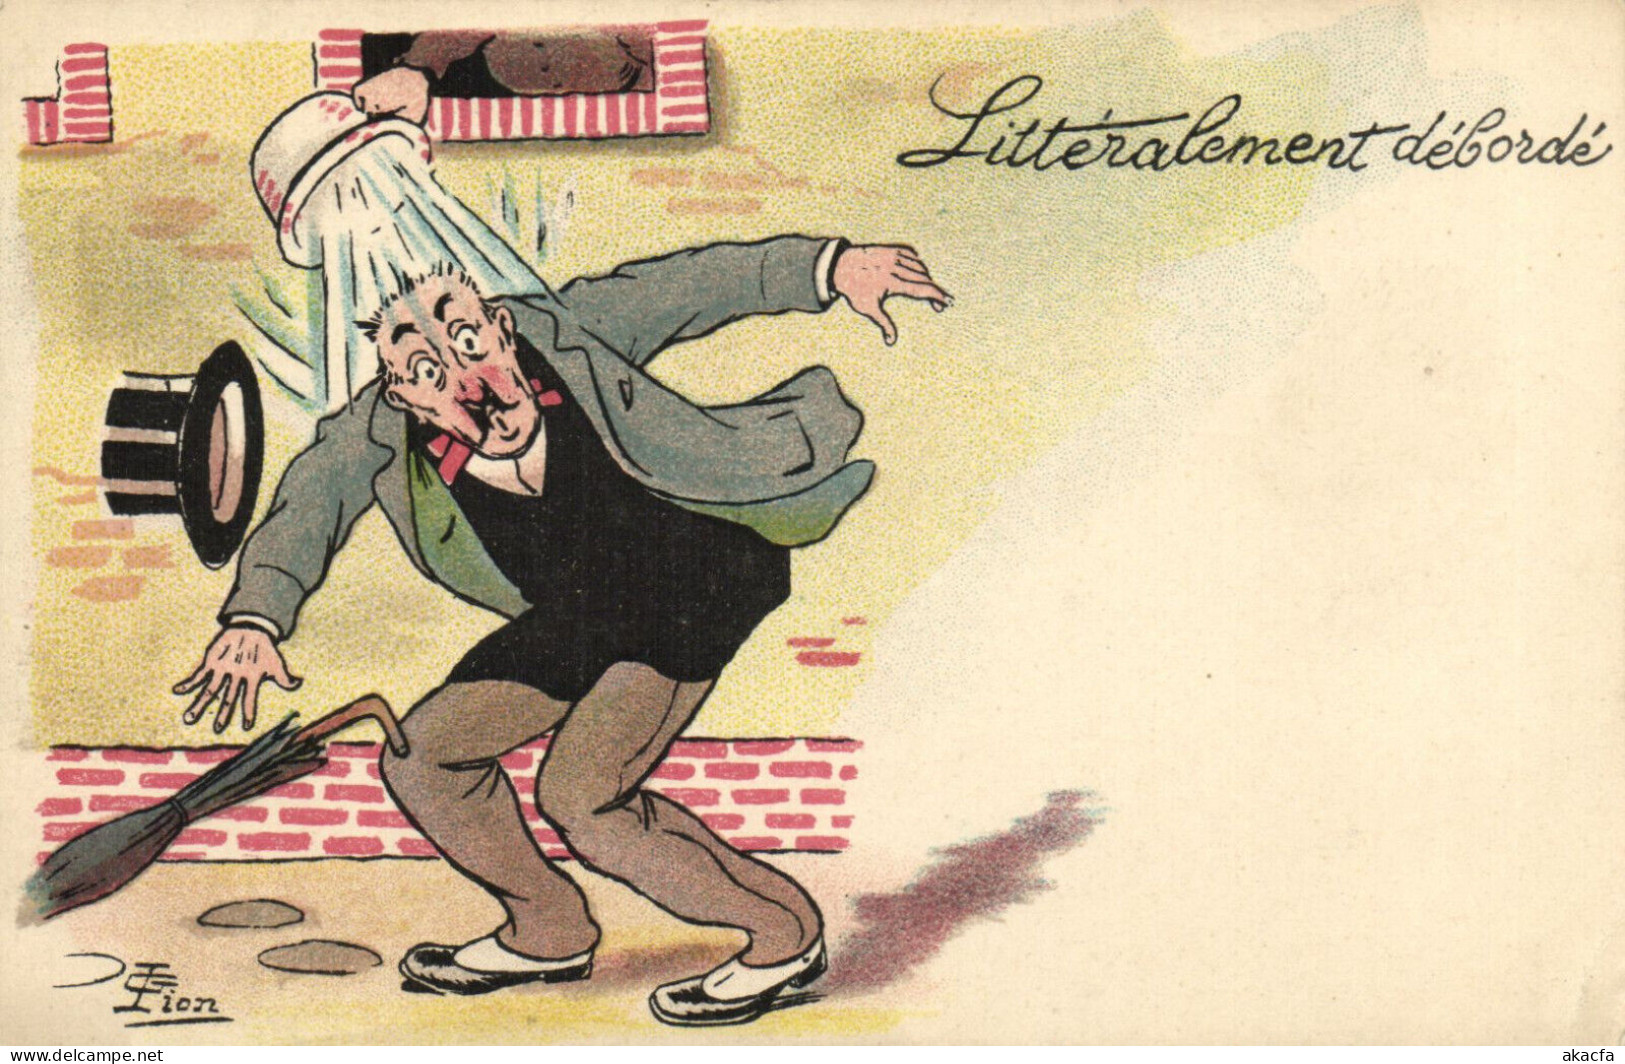 PC ARTIST SIGNED, LION, LITTÉRALEMENT DÉBORDÉ, Vintage Postcard (b52592) - Lion